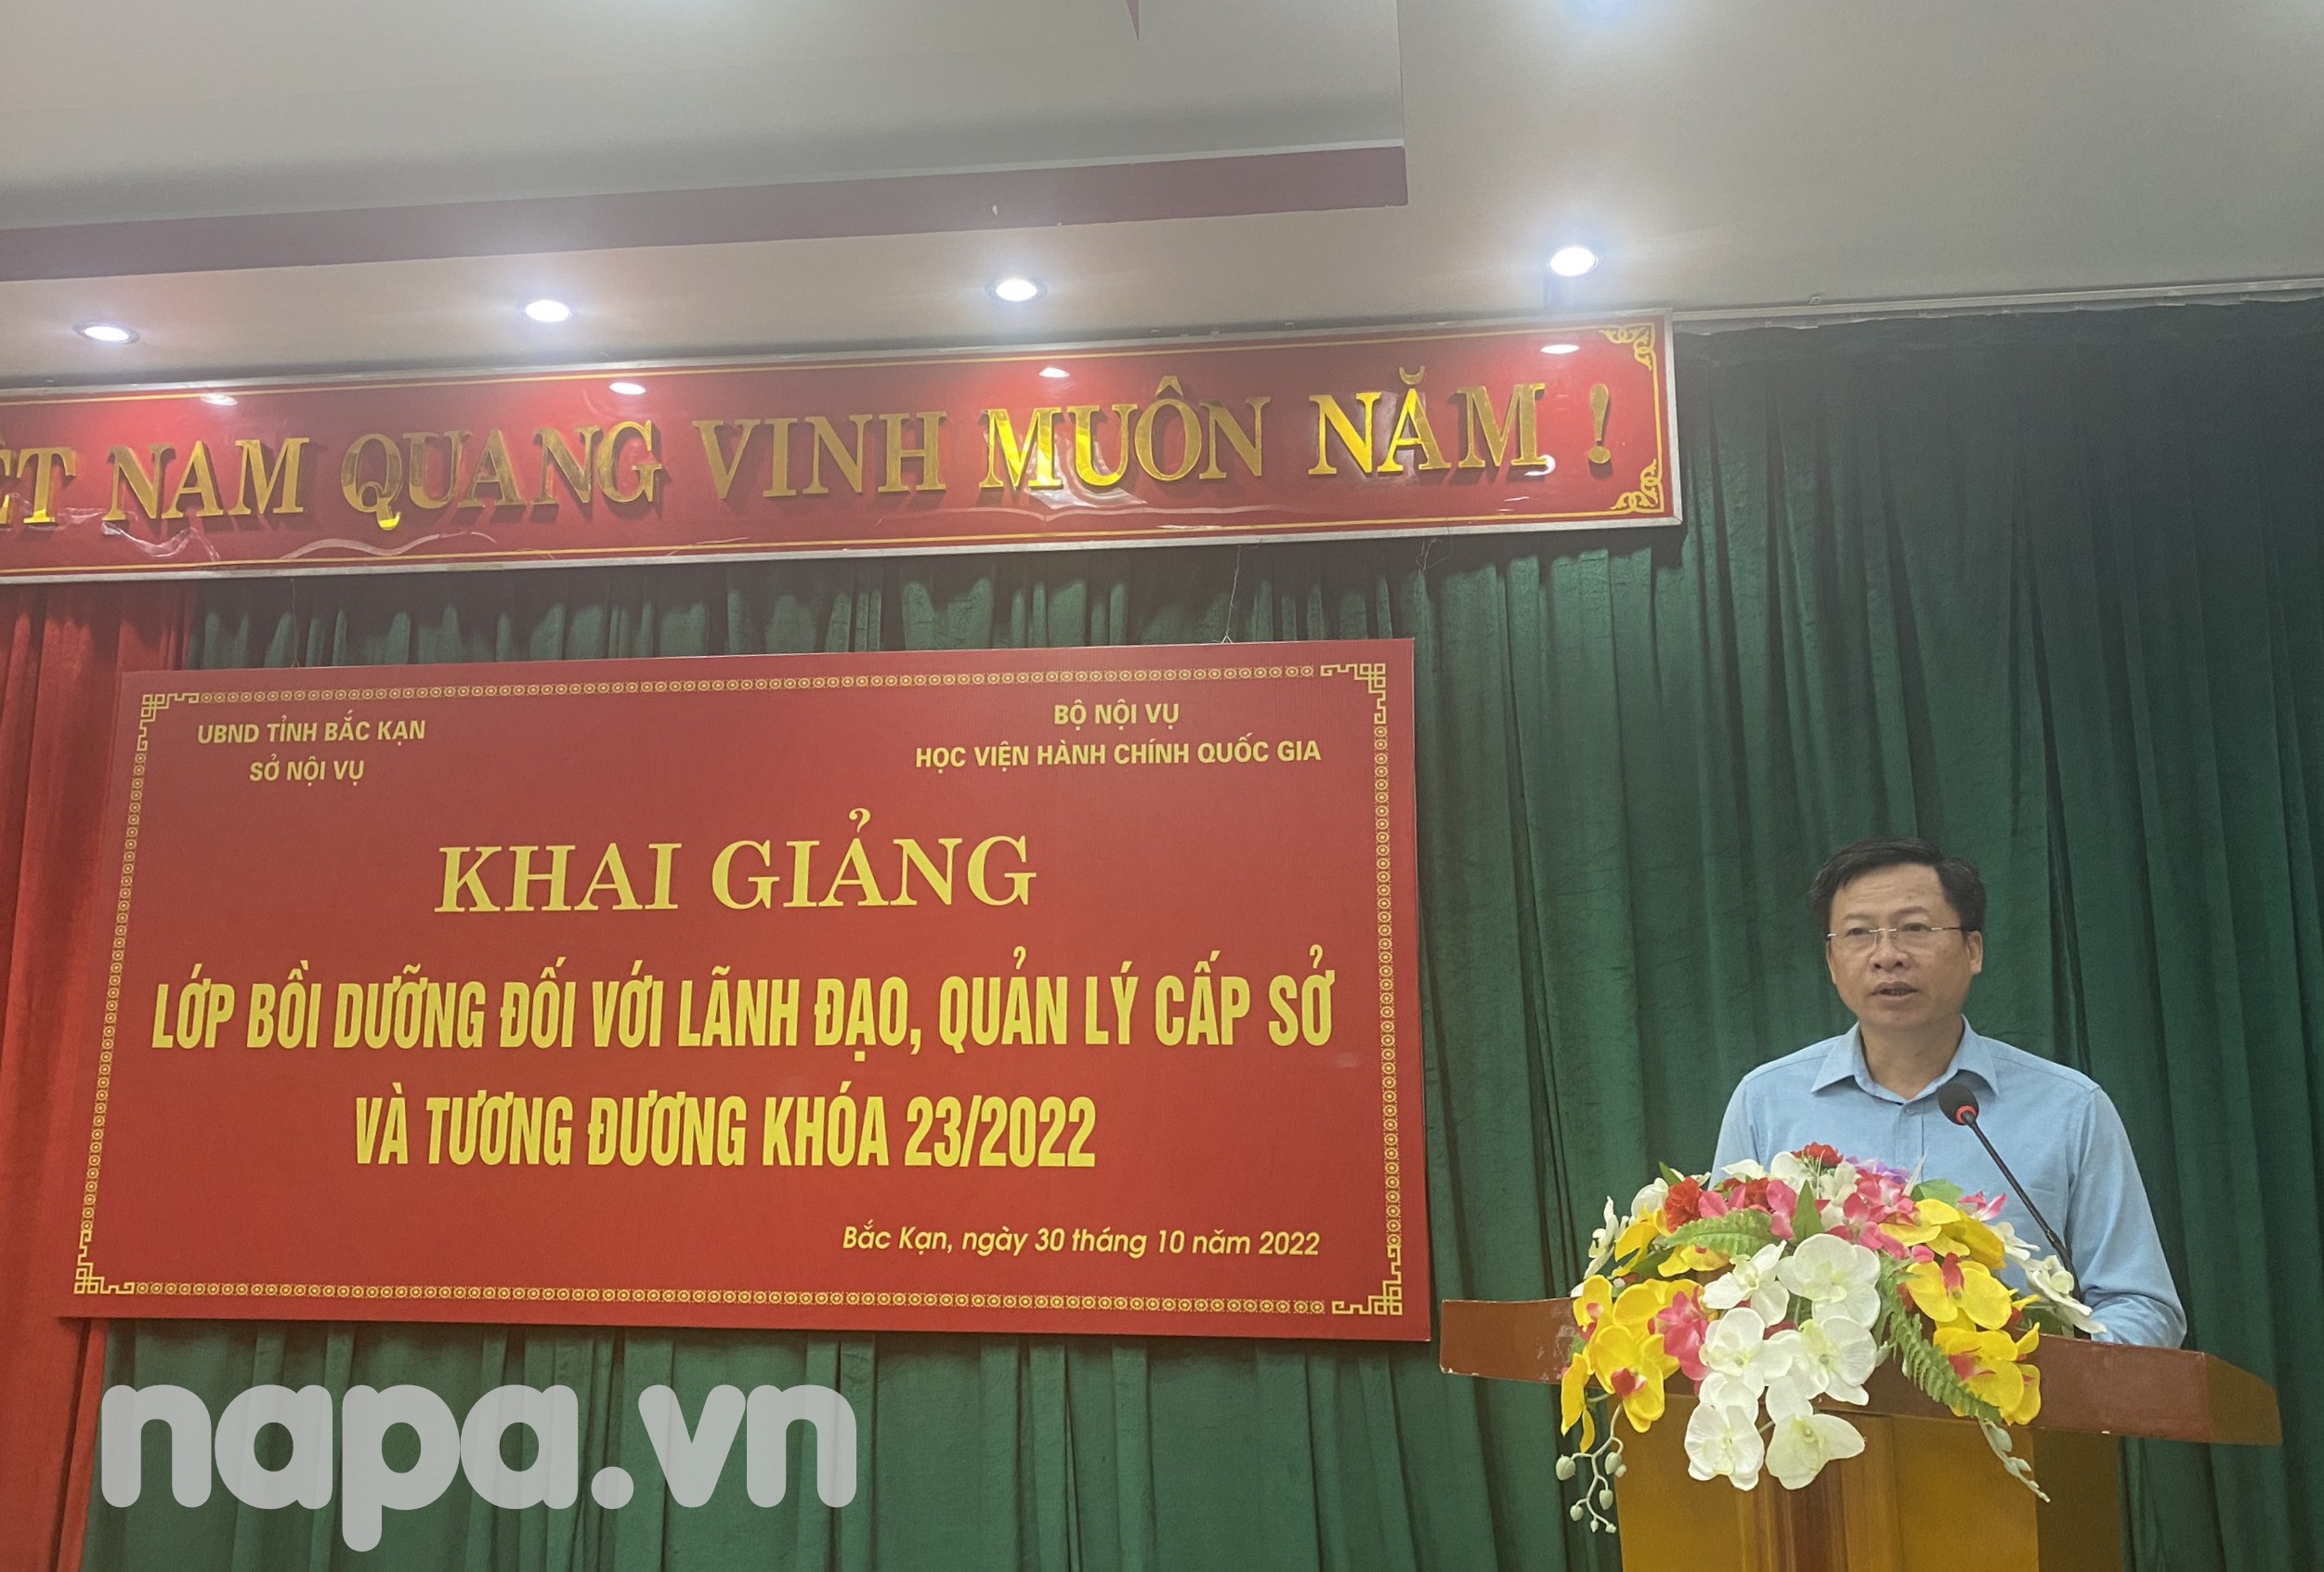 2. Đồng chí Phạm Duy Hưng - Phó Chủ tịch UBND tỉnh Bắc Kạn phát biểu tại lễ khai giảng